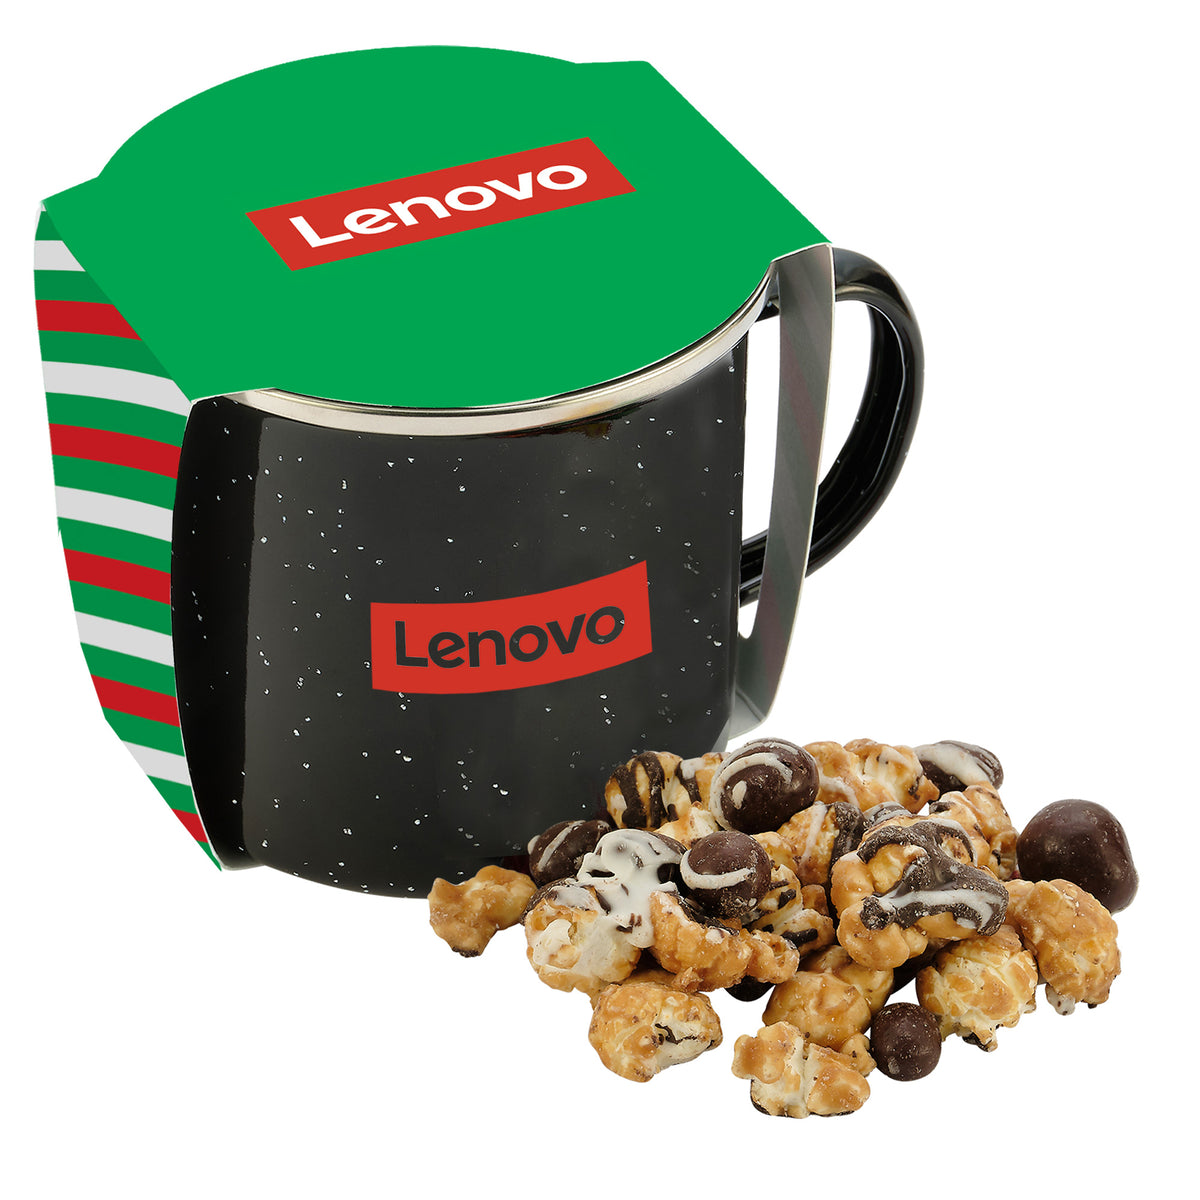 Speckled Camping Mug - 16 oz., Caramel Latte Popcorn